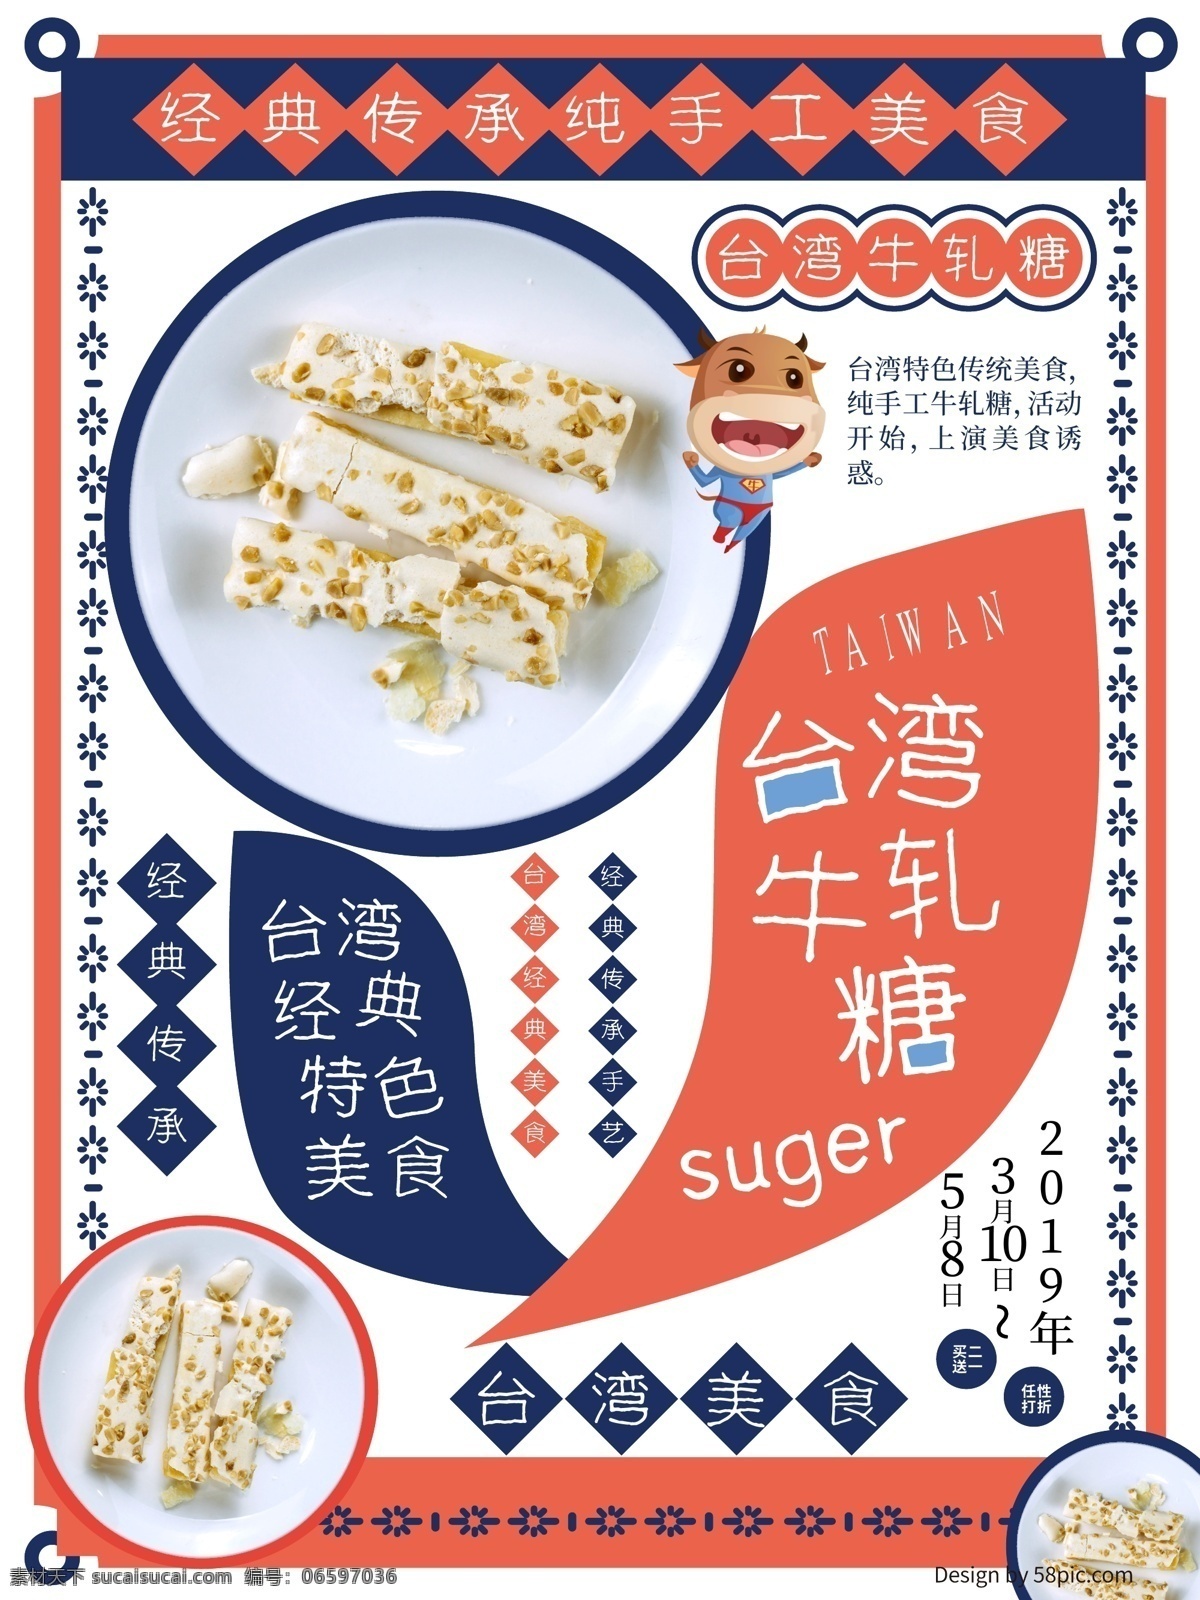 台湾 美食 牛轧糖 海报 食品 传承 手艺 文化 传统